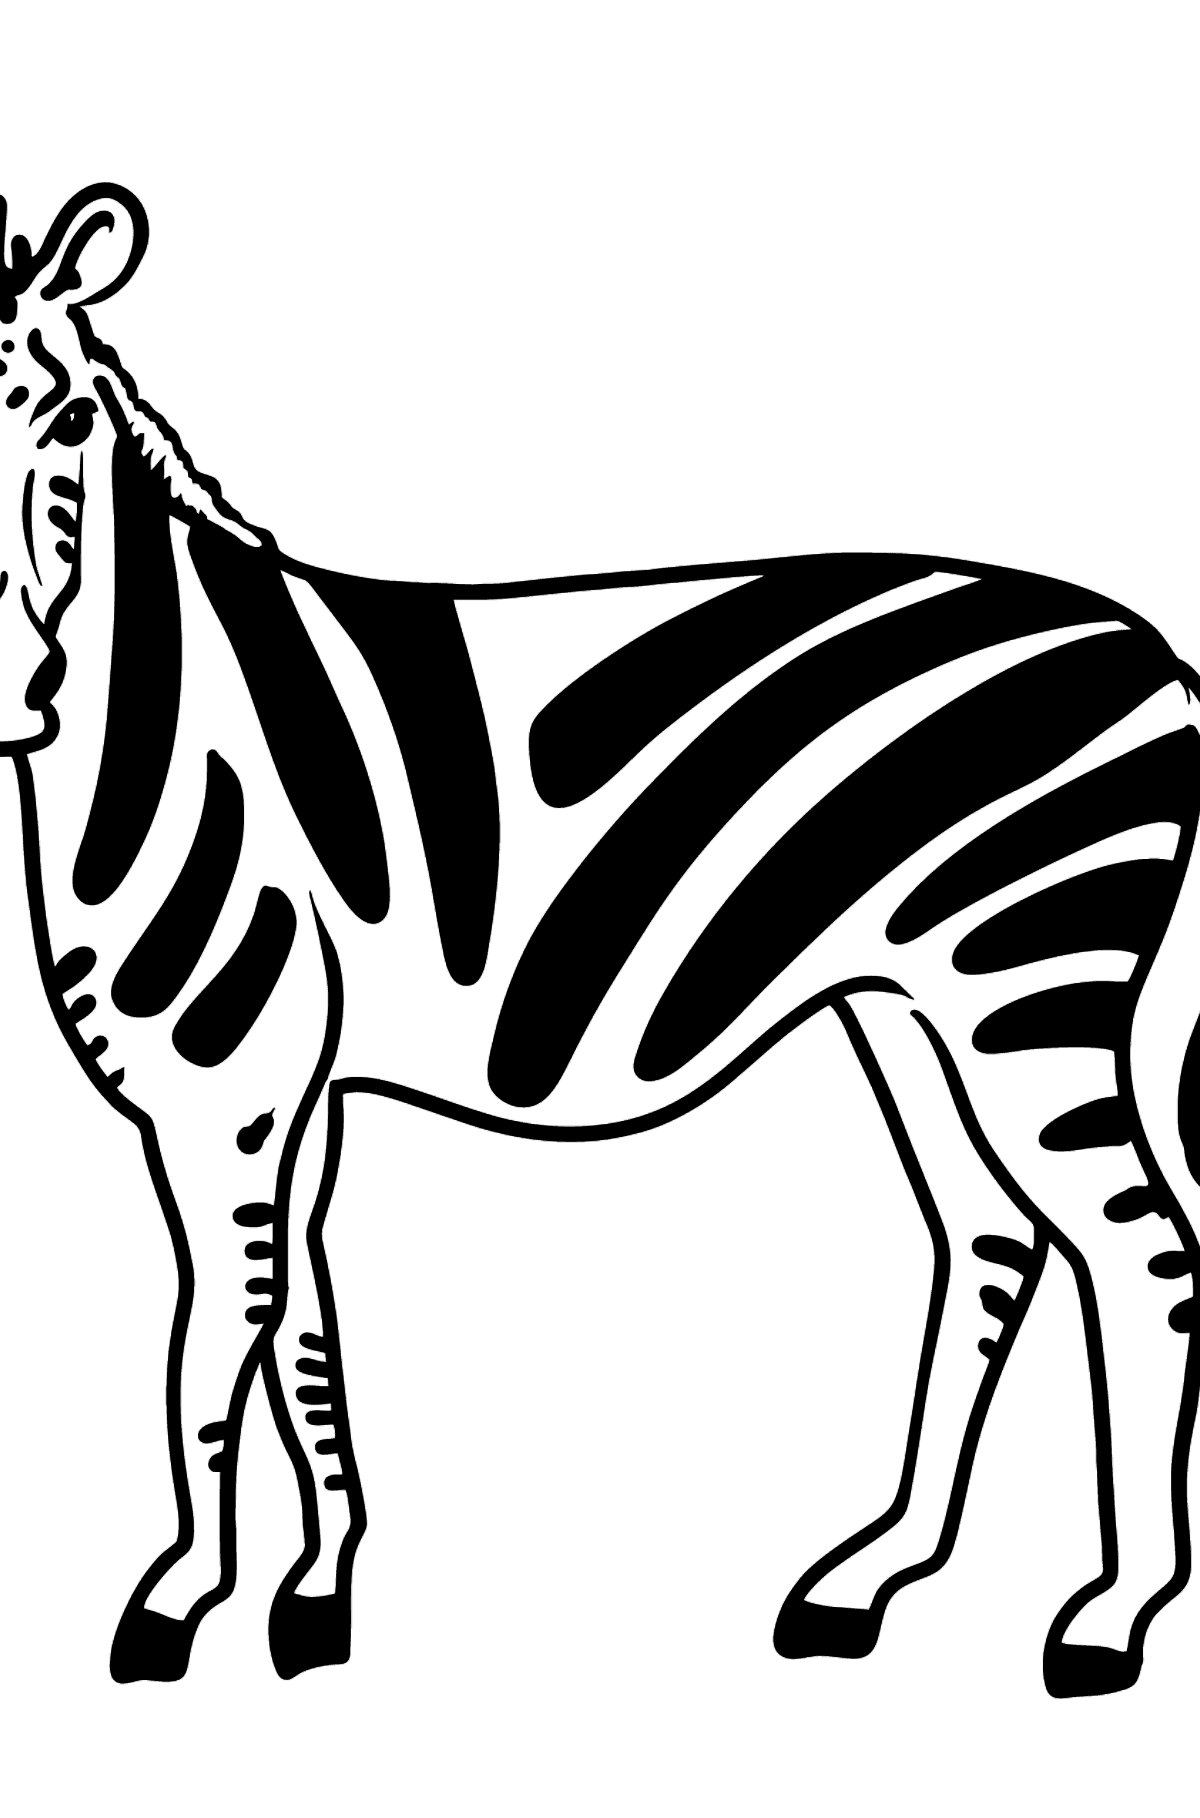 Zebra Ausmalbild - Malvorlagen für Kinder